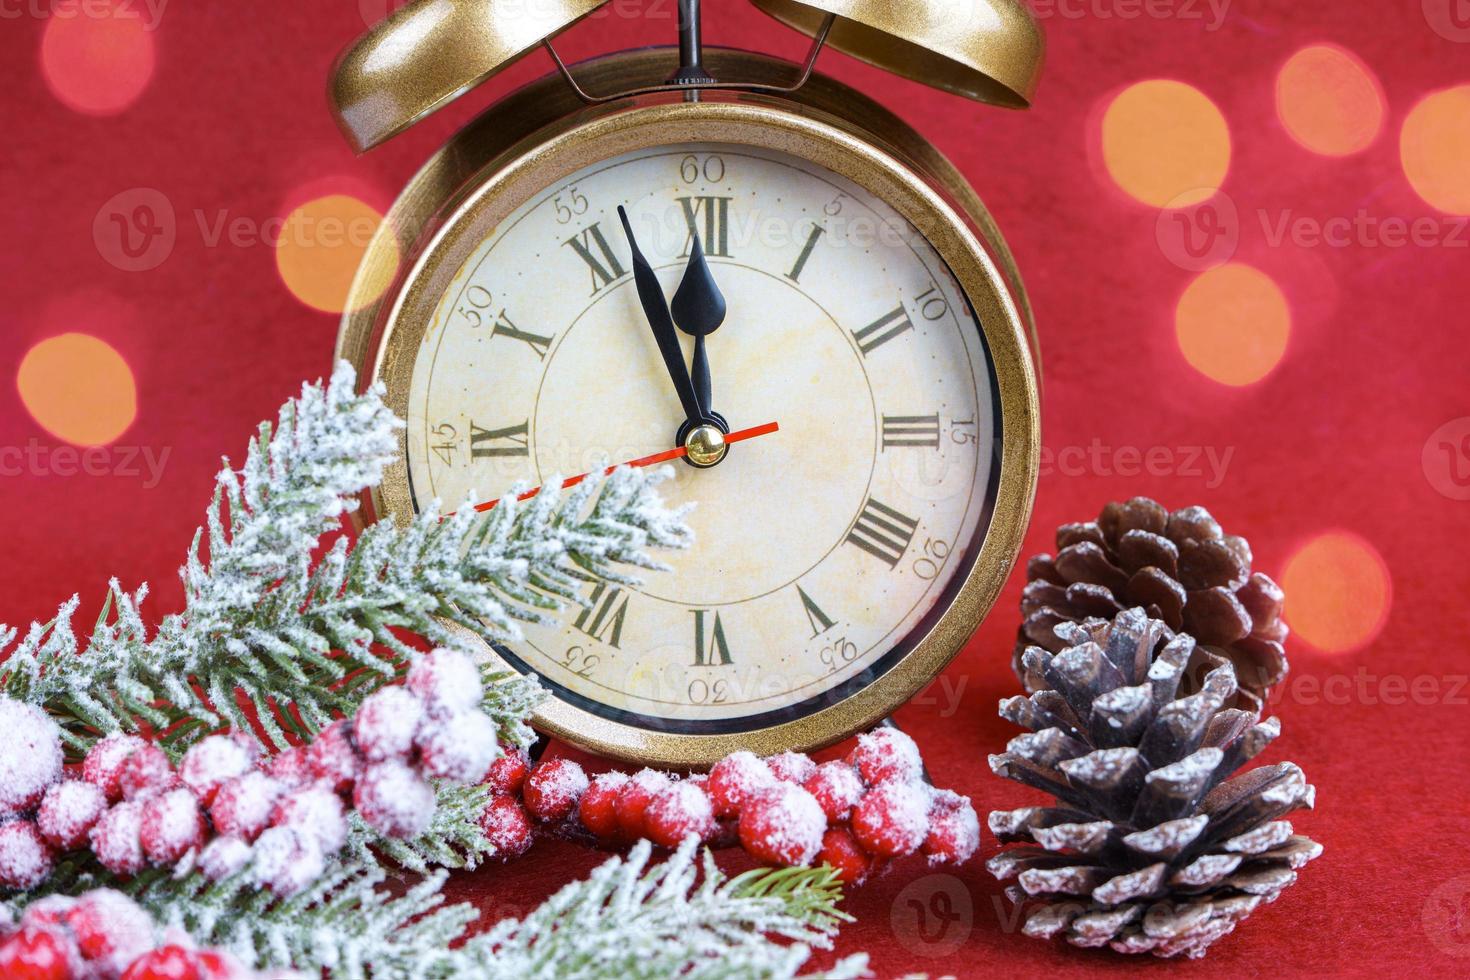 Natale neve abete albero, allarme orologio e regalo Borsa su rosso sfondo. foto